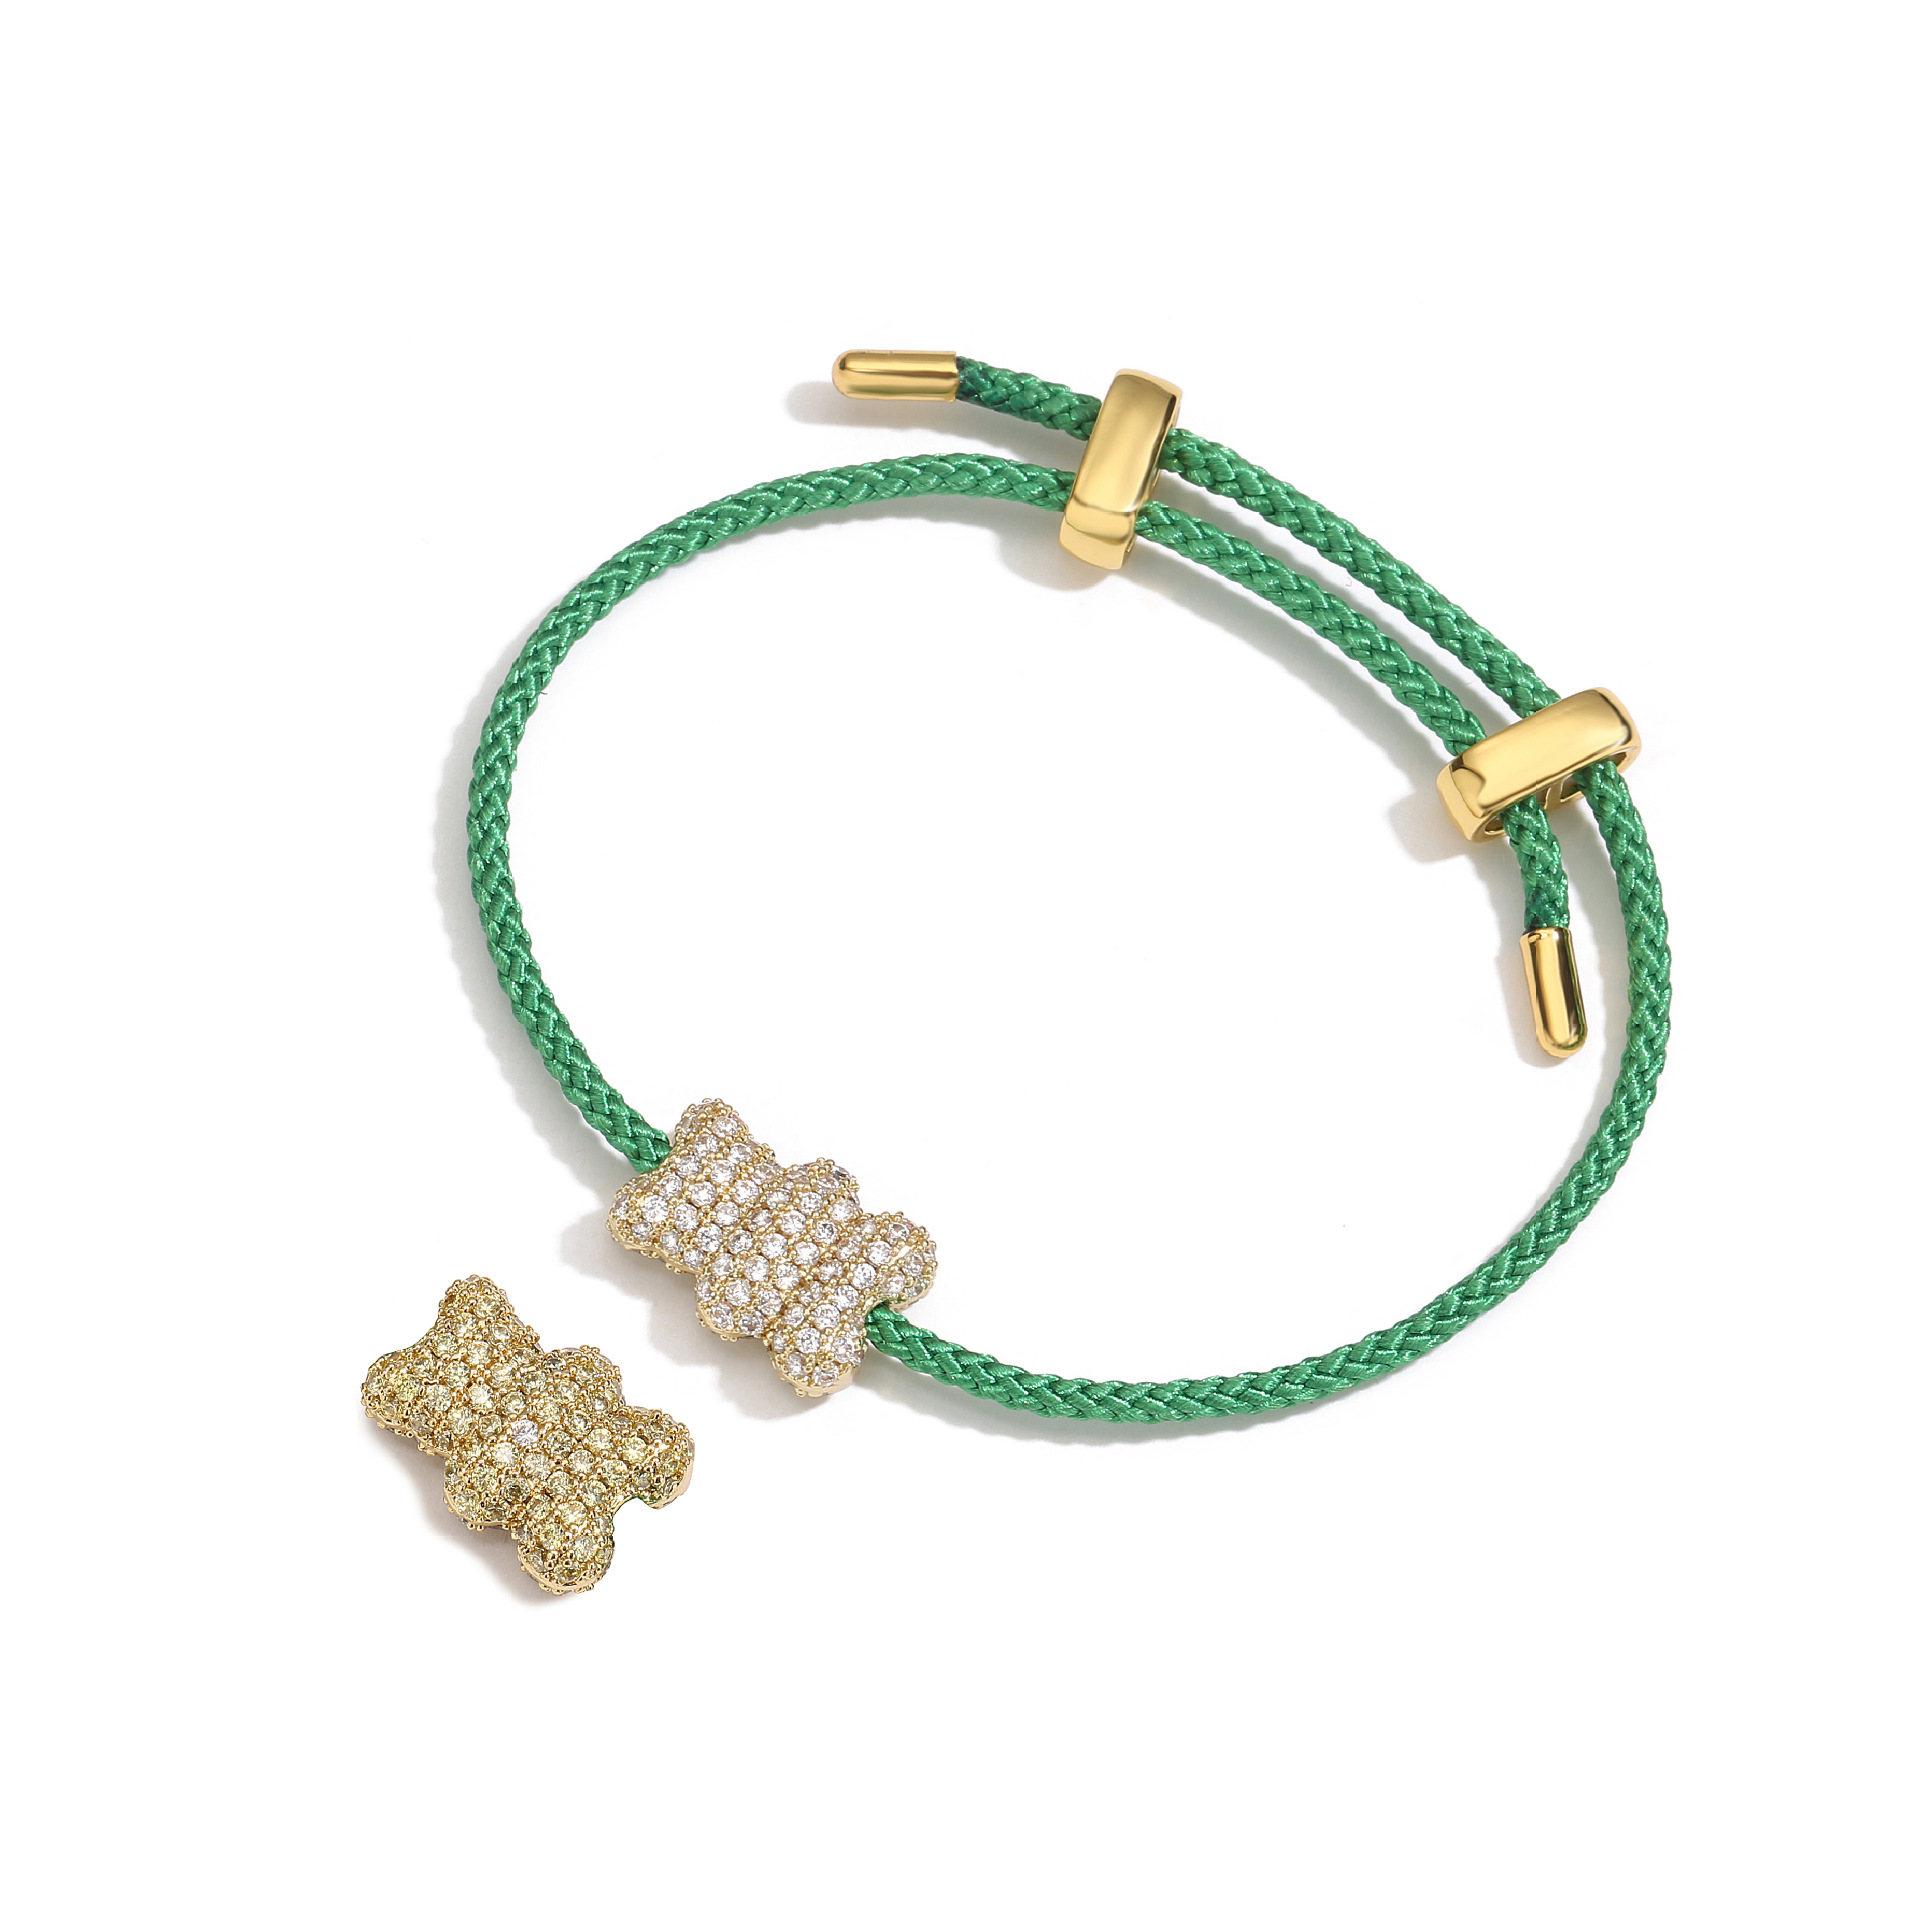 3:Green Bracelet